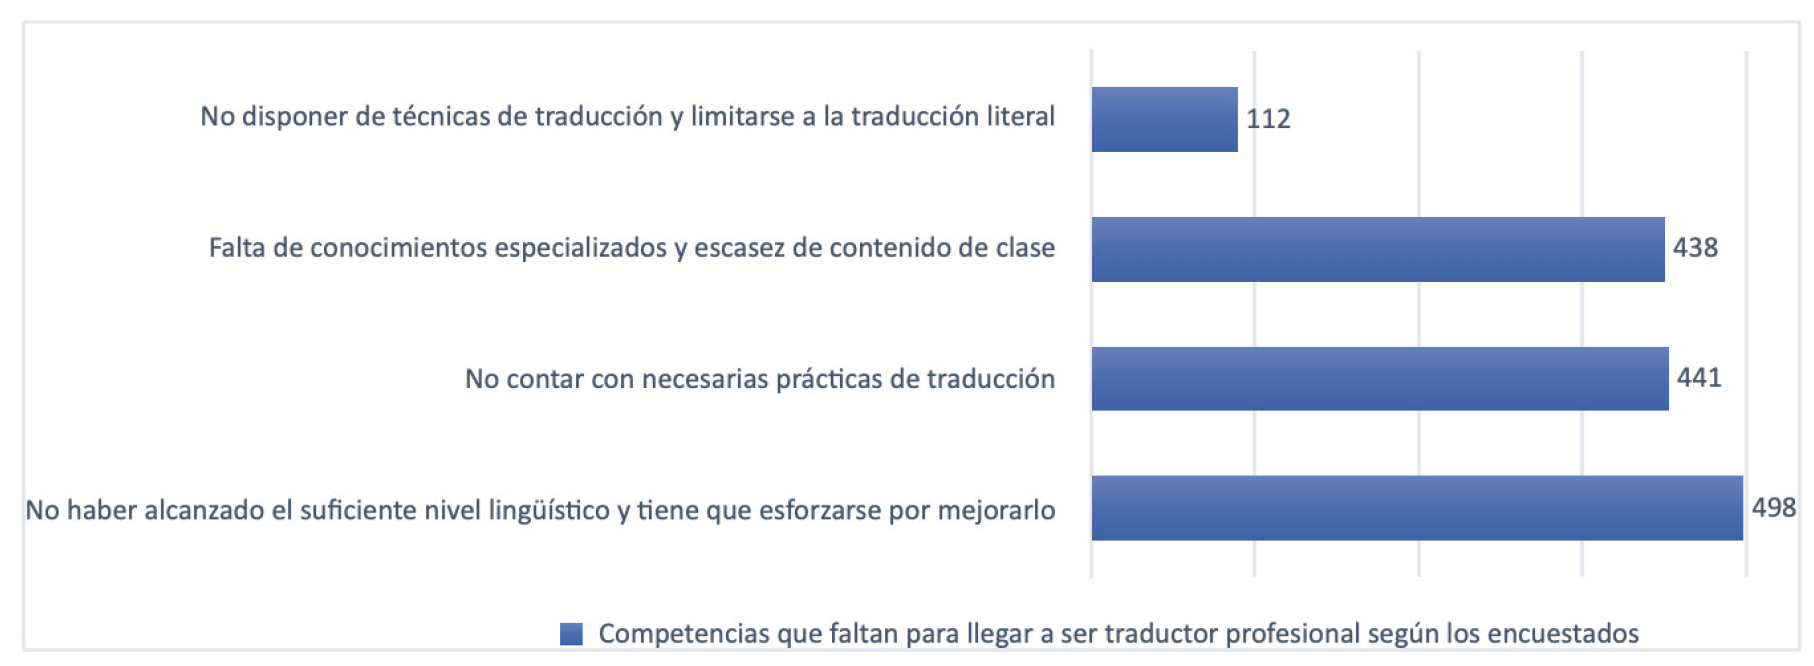 Gráfico V. Competencias que faltan para ser traductor profesional (Elaboración propia)